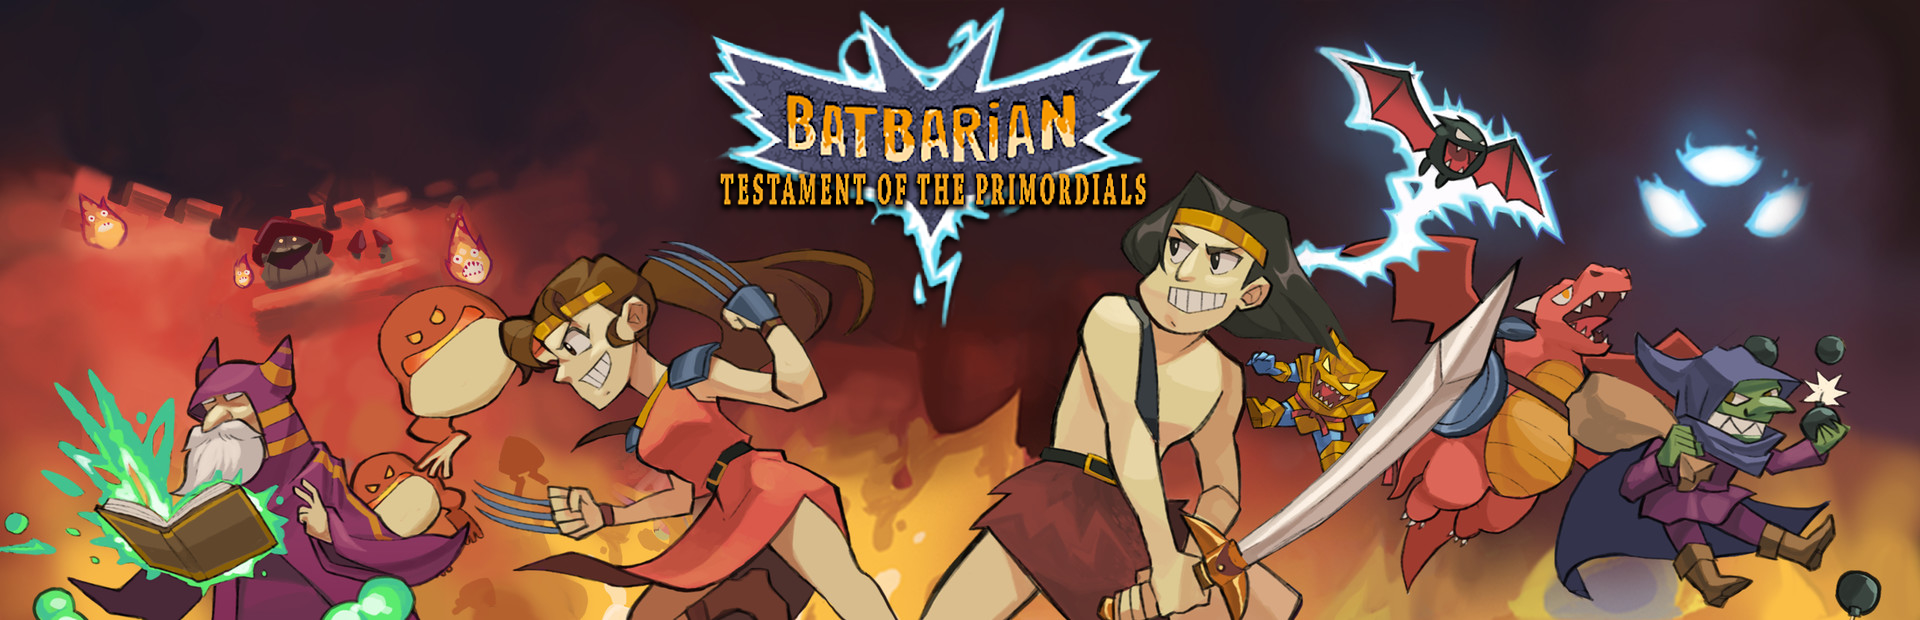 دانلود بازی Batbarian: Testament of the Primordials برای PC | گیمباتو